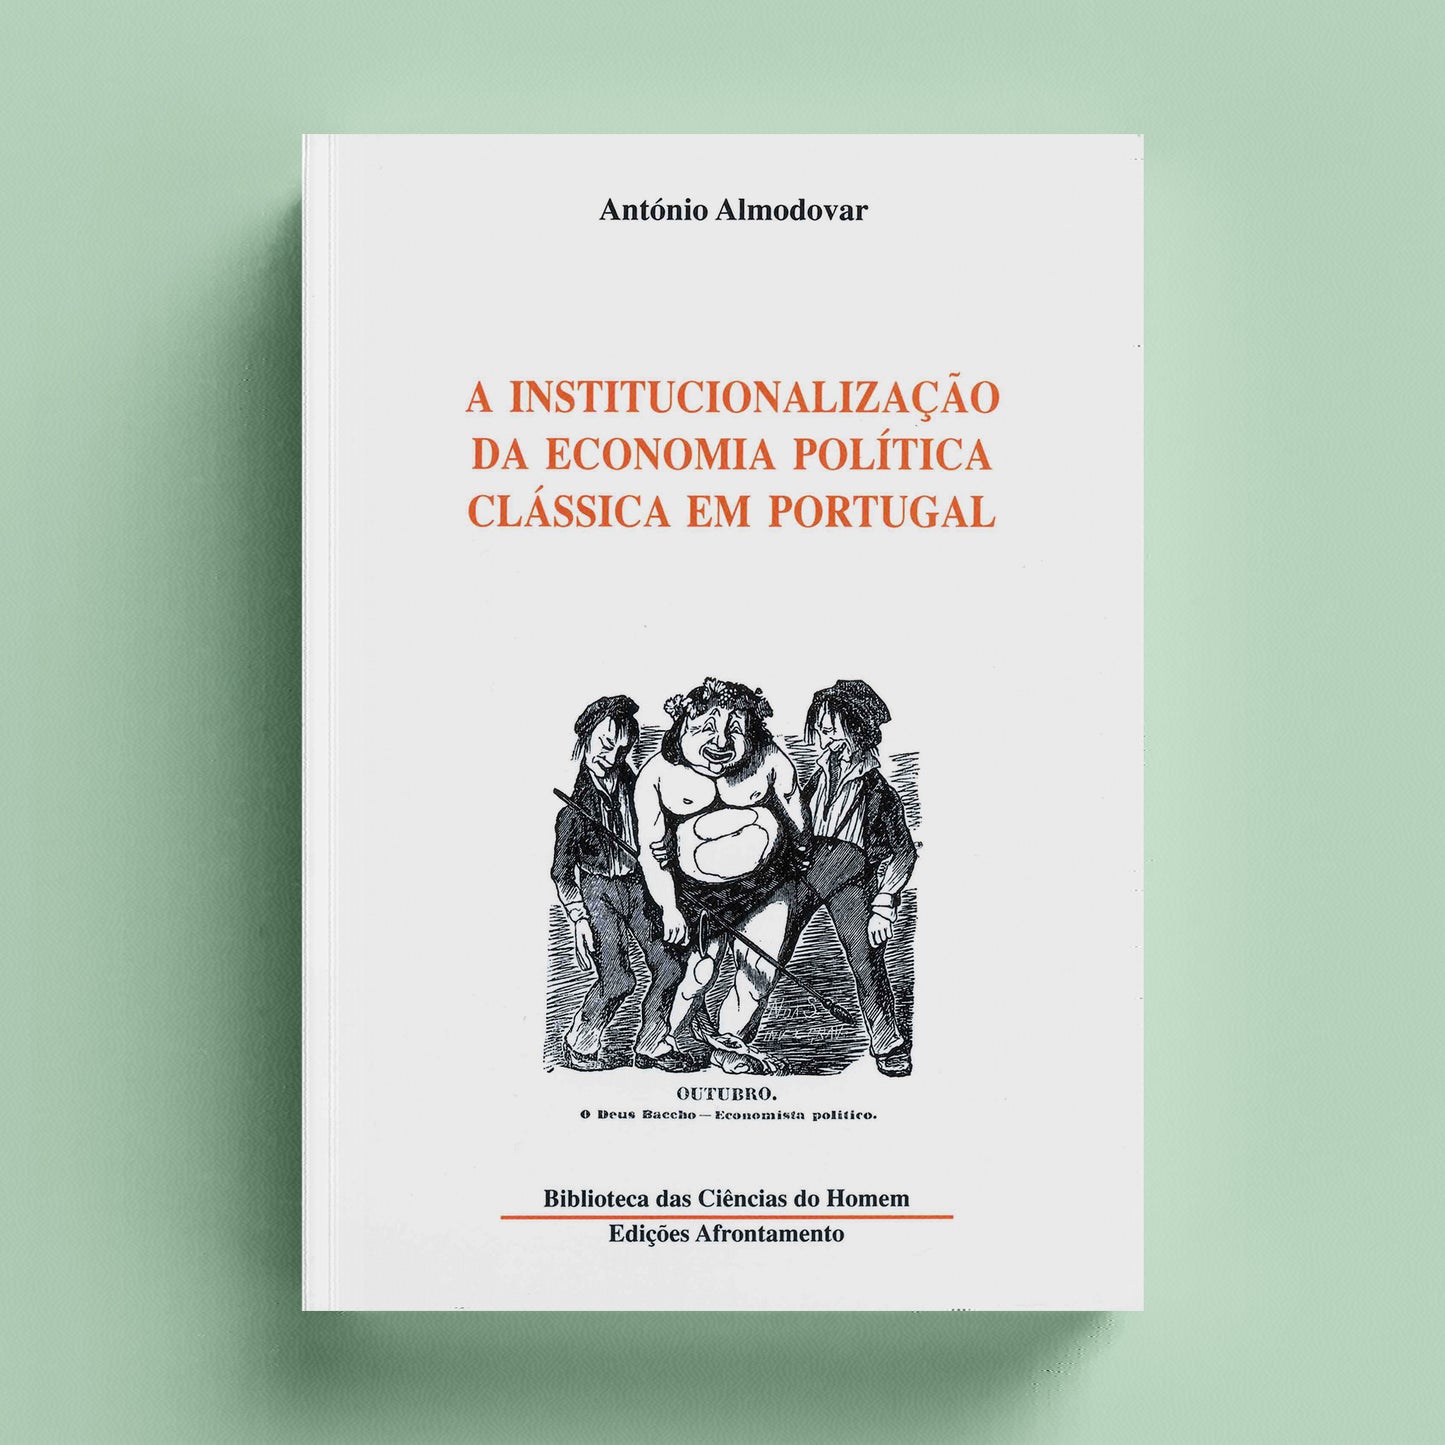 A Institucionalização da Economia Política Clássica em Portugal